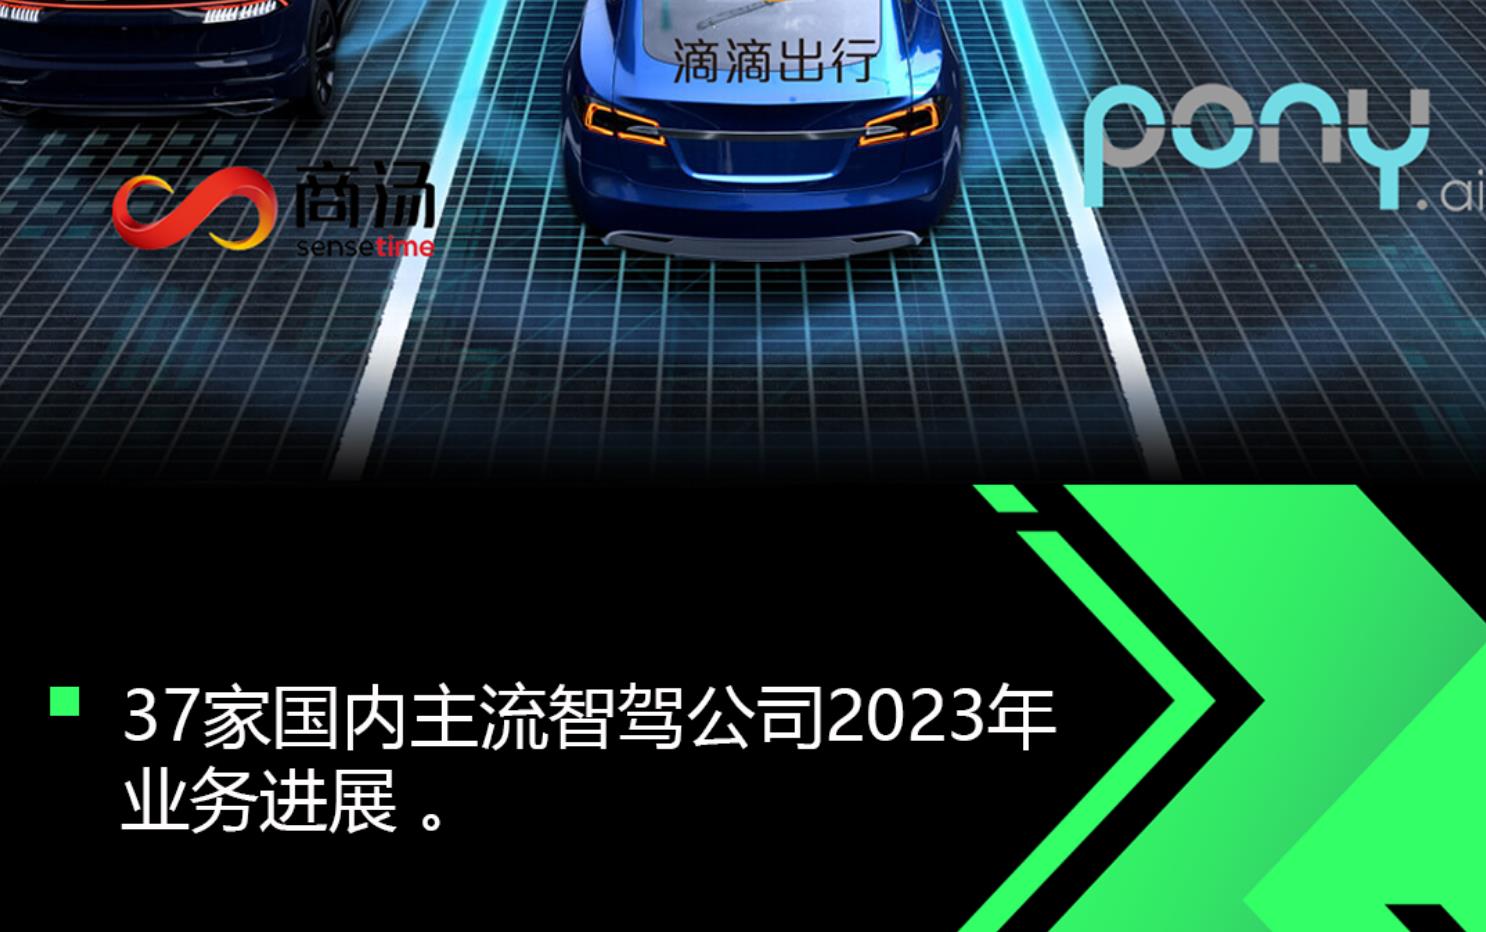 2023年中国主流智驾公司业务进展梳理